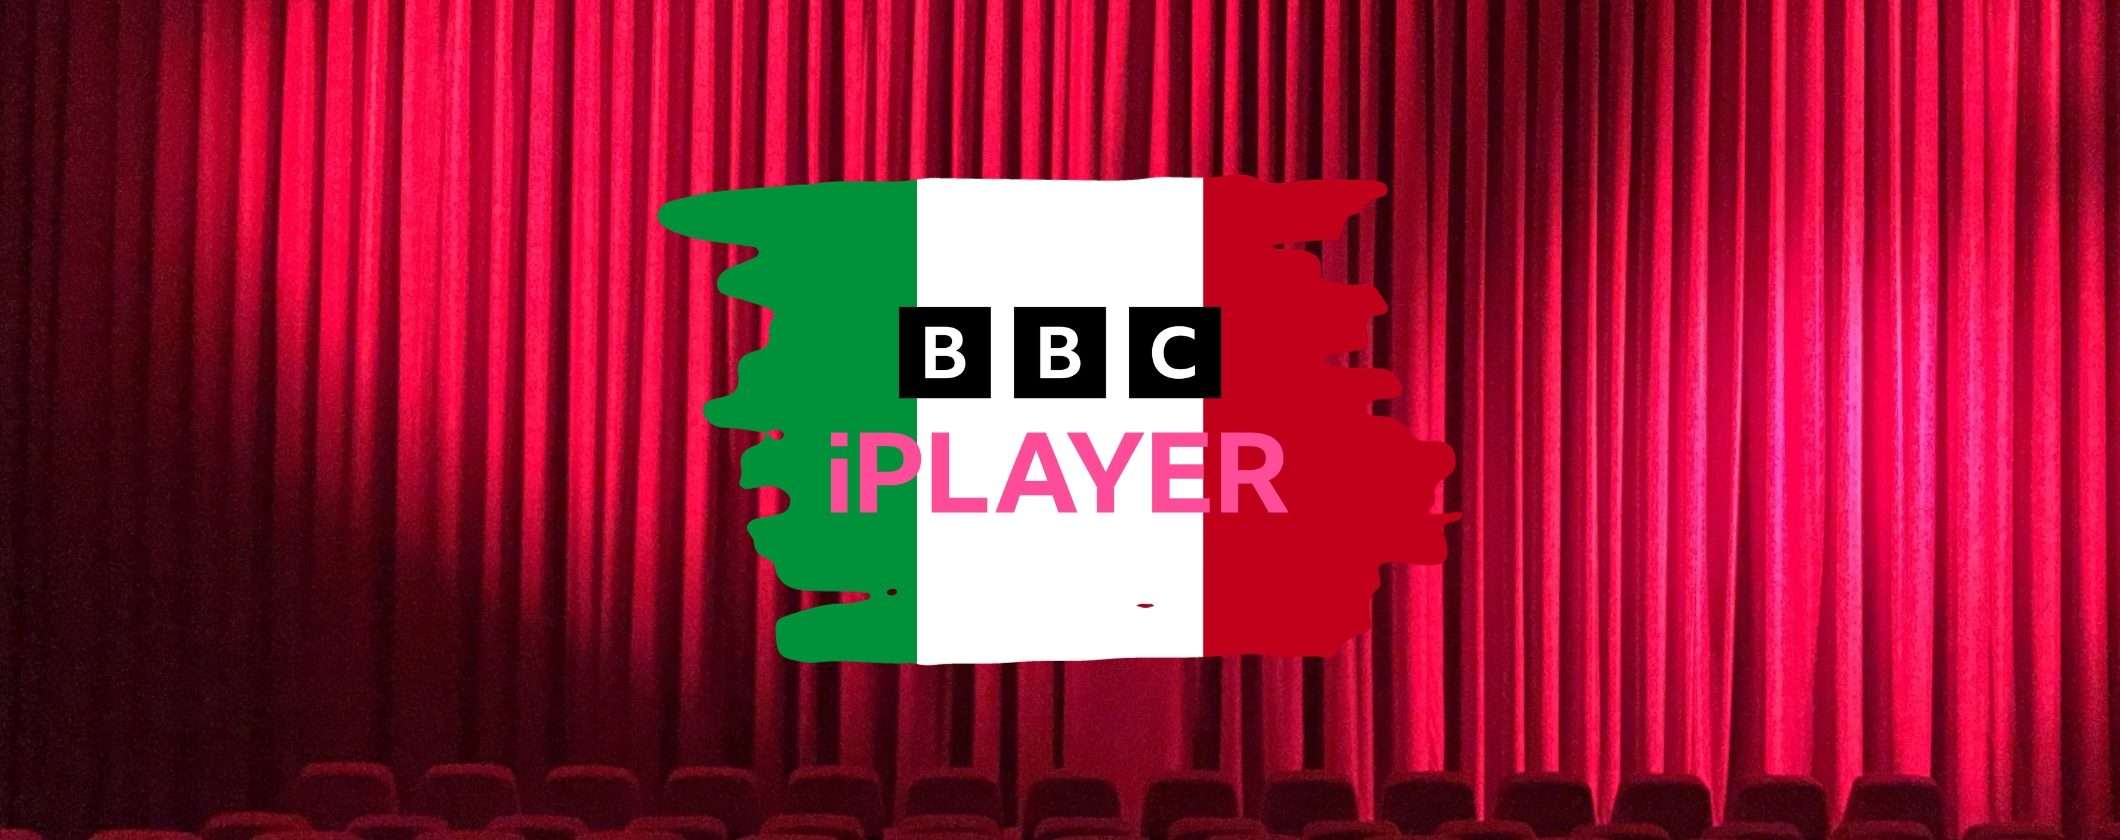 Ecco il trucco per vedere la BBC dall'Italia in streaming